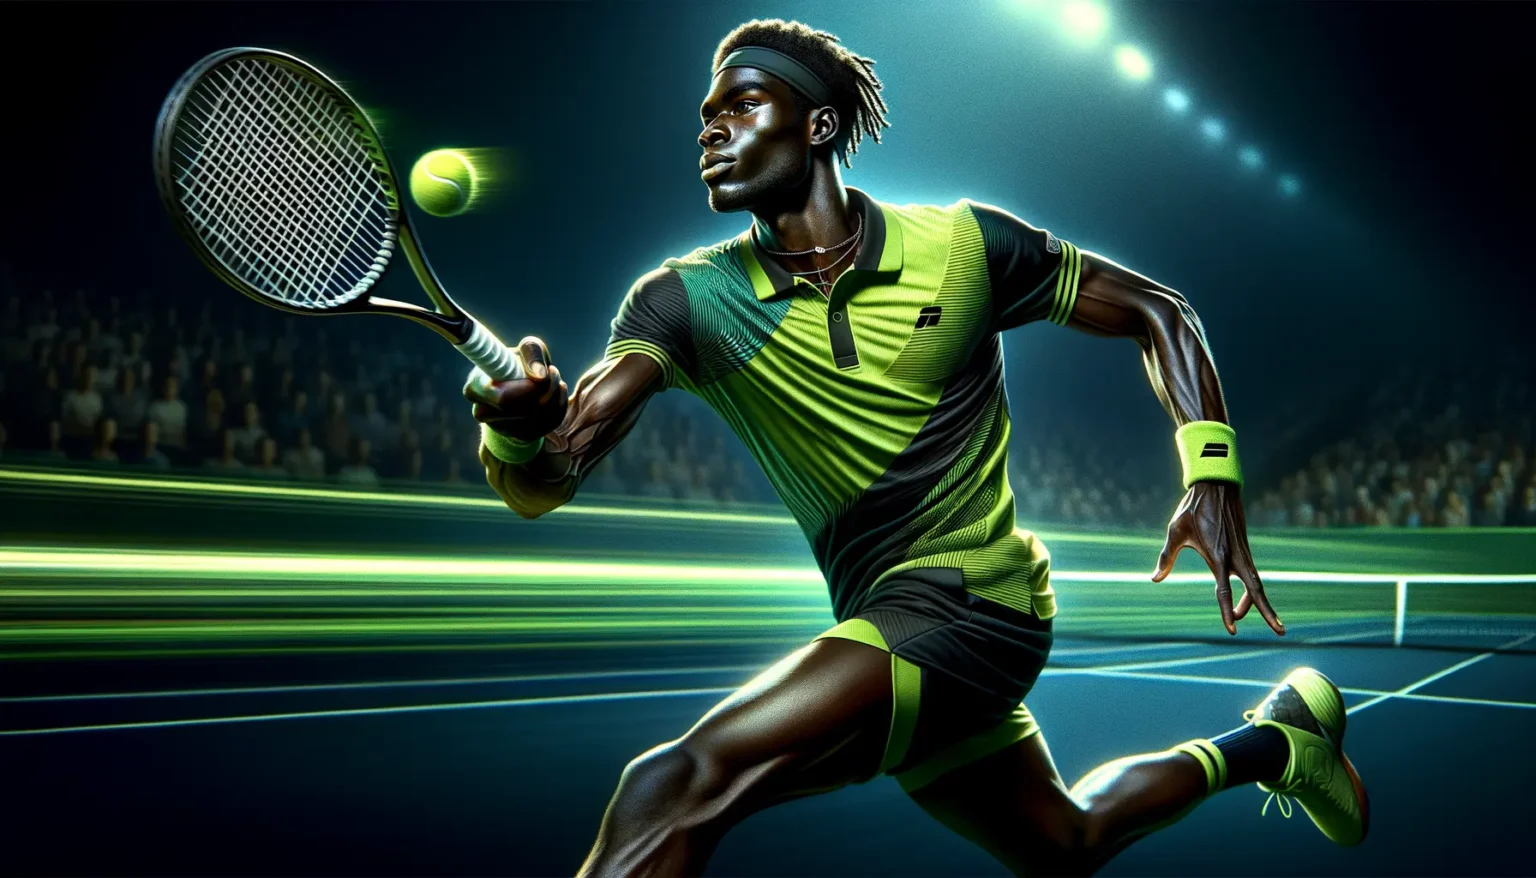 Ein Tennisspieler in Aktion auf einem beleuchteten Tenniscourt bei Nacht. Er trägt ein grünes Sportoutfit, einen Stirnband und bereitet sich darauf vor, den herannahenden Tennisball mit seiner Rückhand zu schlagen. Die Szene zeigt dynamische Bewegung und ist digital illustriert, wodurch sie besonders lebendig wirkt.